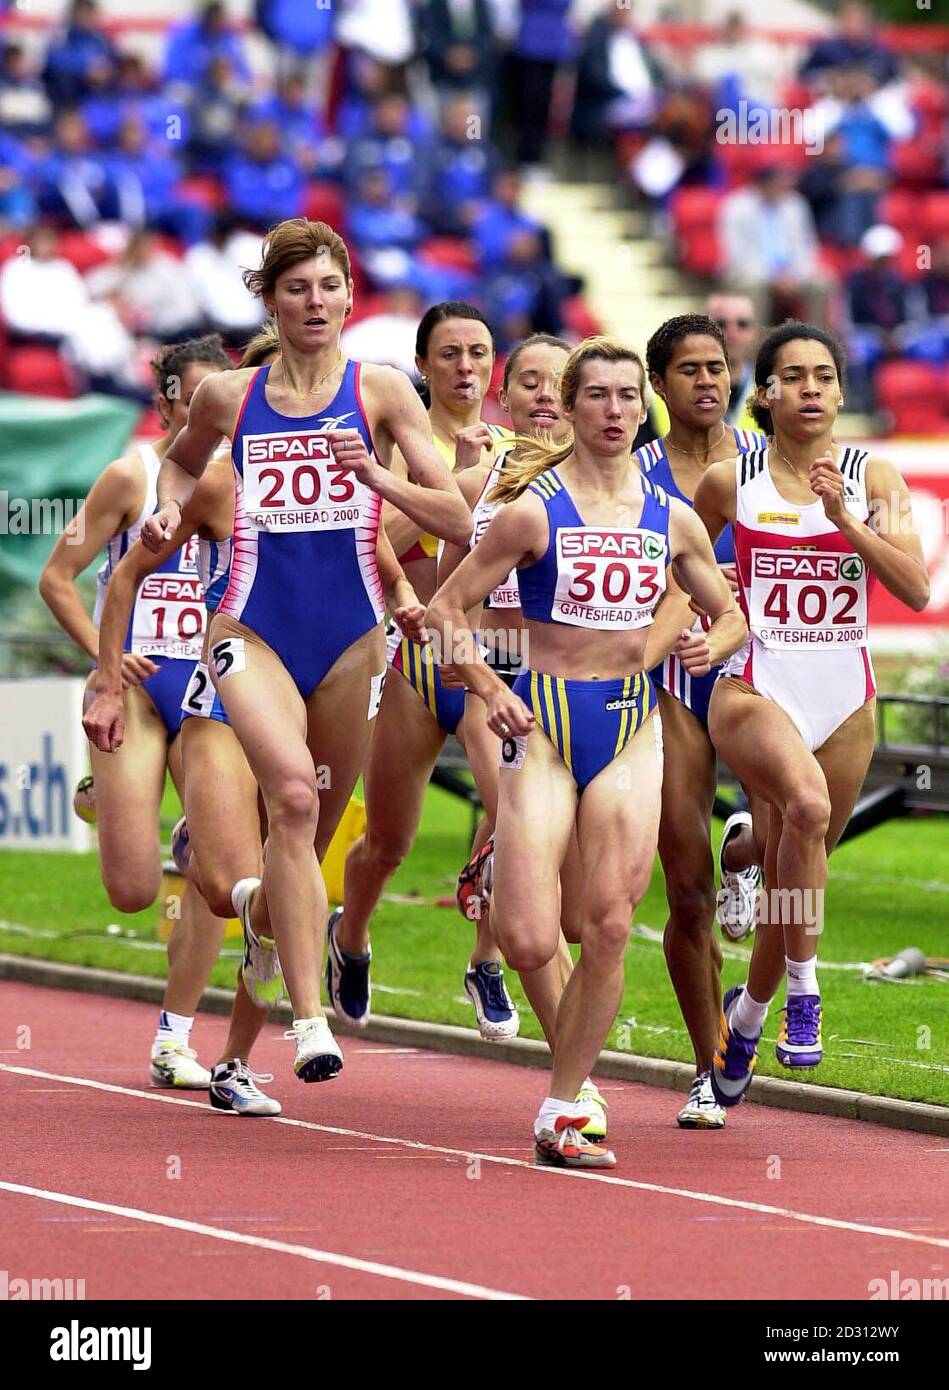 800-Meter-Rennen (L-R) die russische Irina Mistjukewitsch, die britische Tanya Blake (teilweise verdeckt), Marina Makarova und die deutsche Linda Kisabaka während des Spar European Cup 2000 in Gateshead. Stockfoto